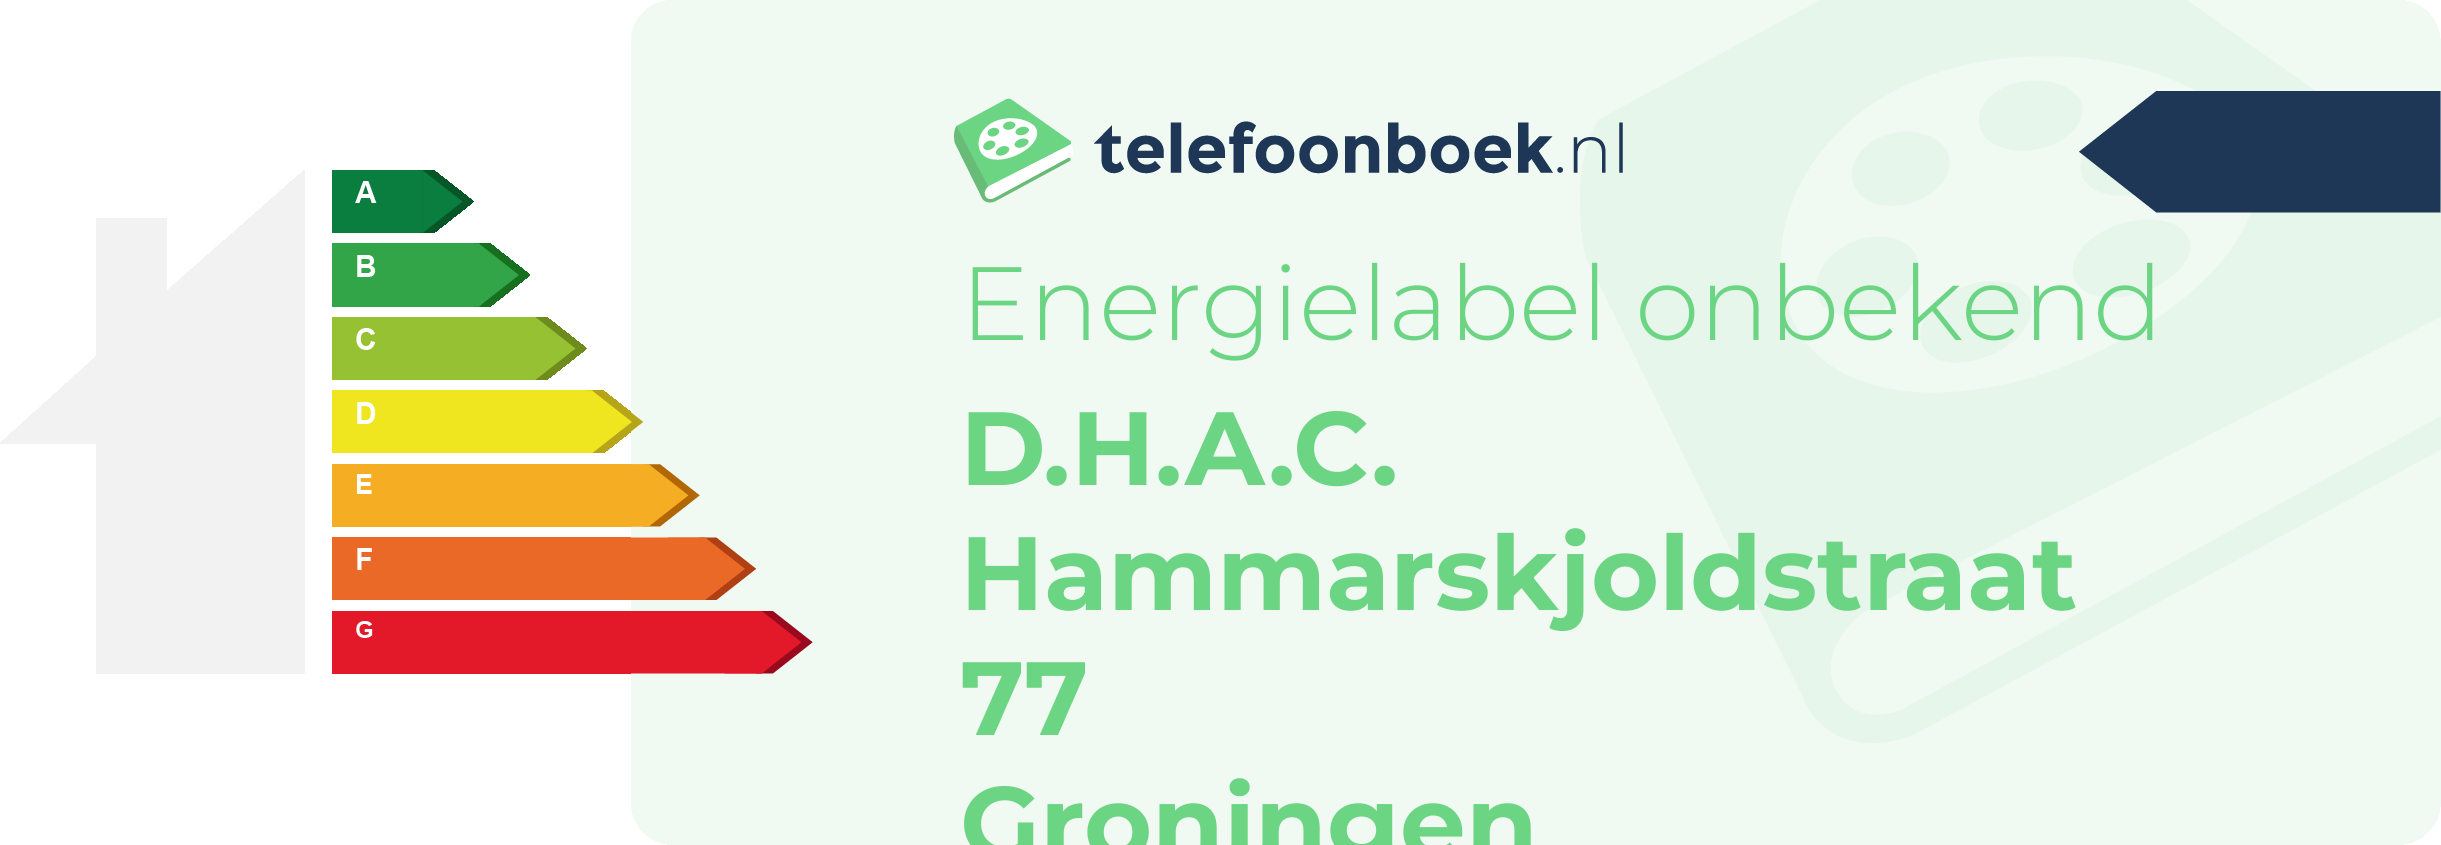 Energielabel D.H.A.C. Hammarskjoldstraat 77 Groningen